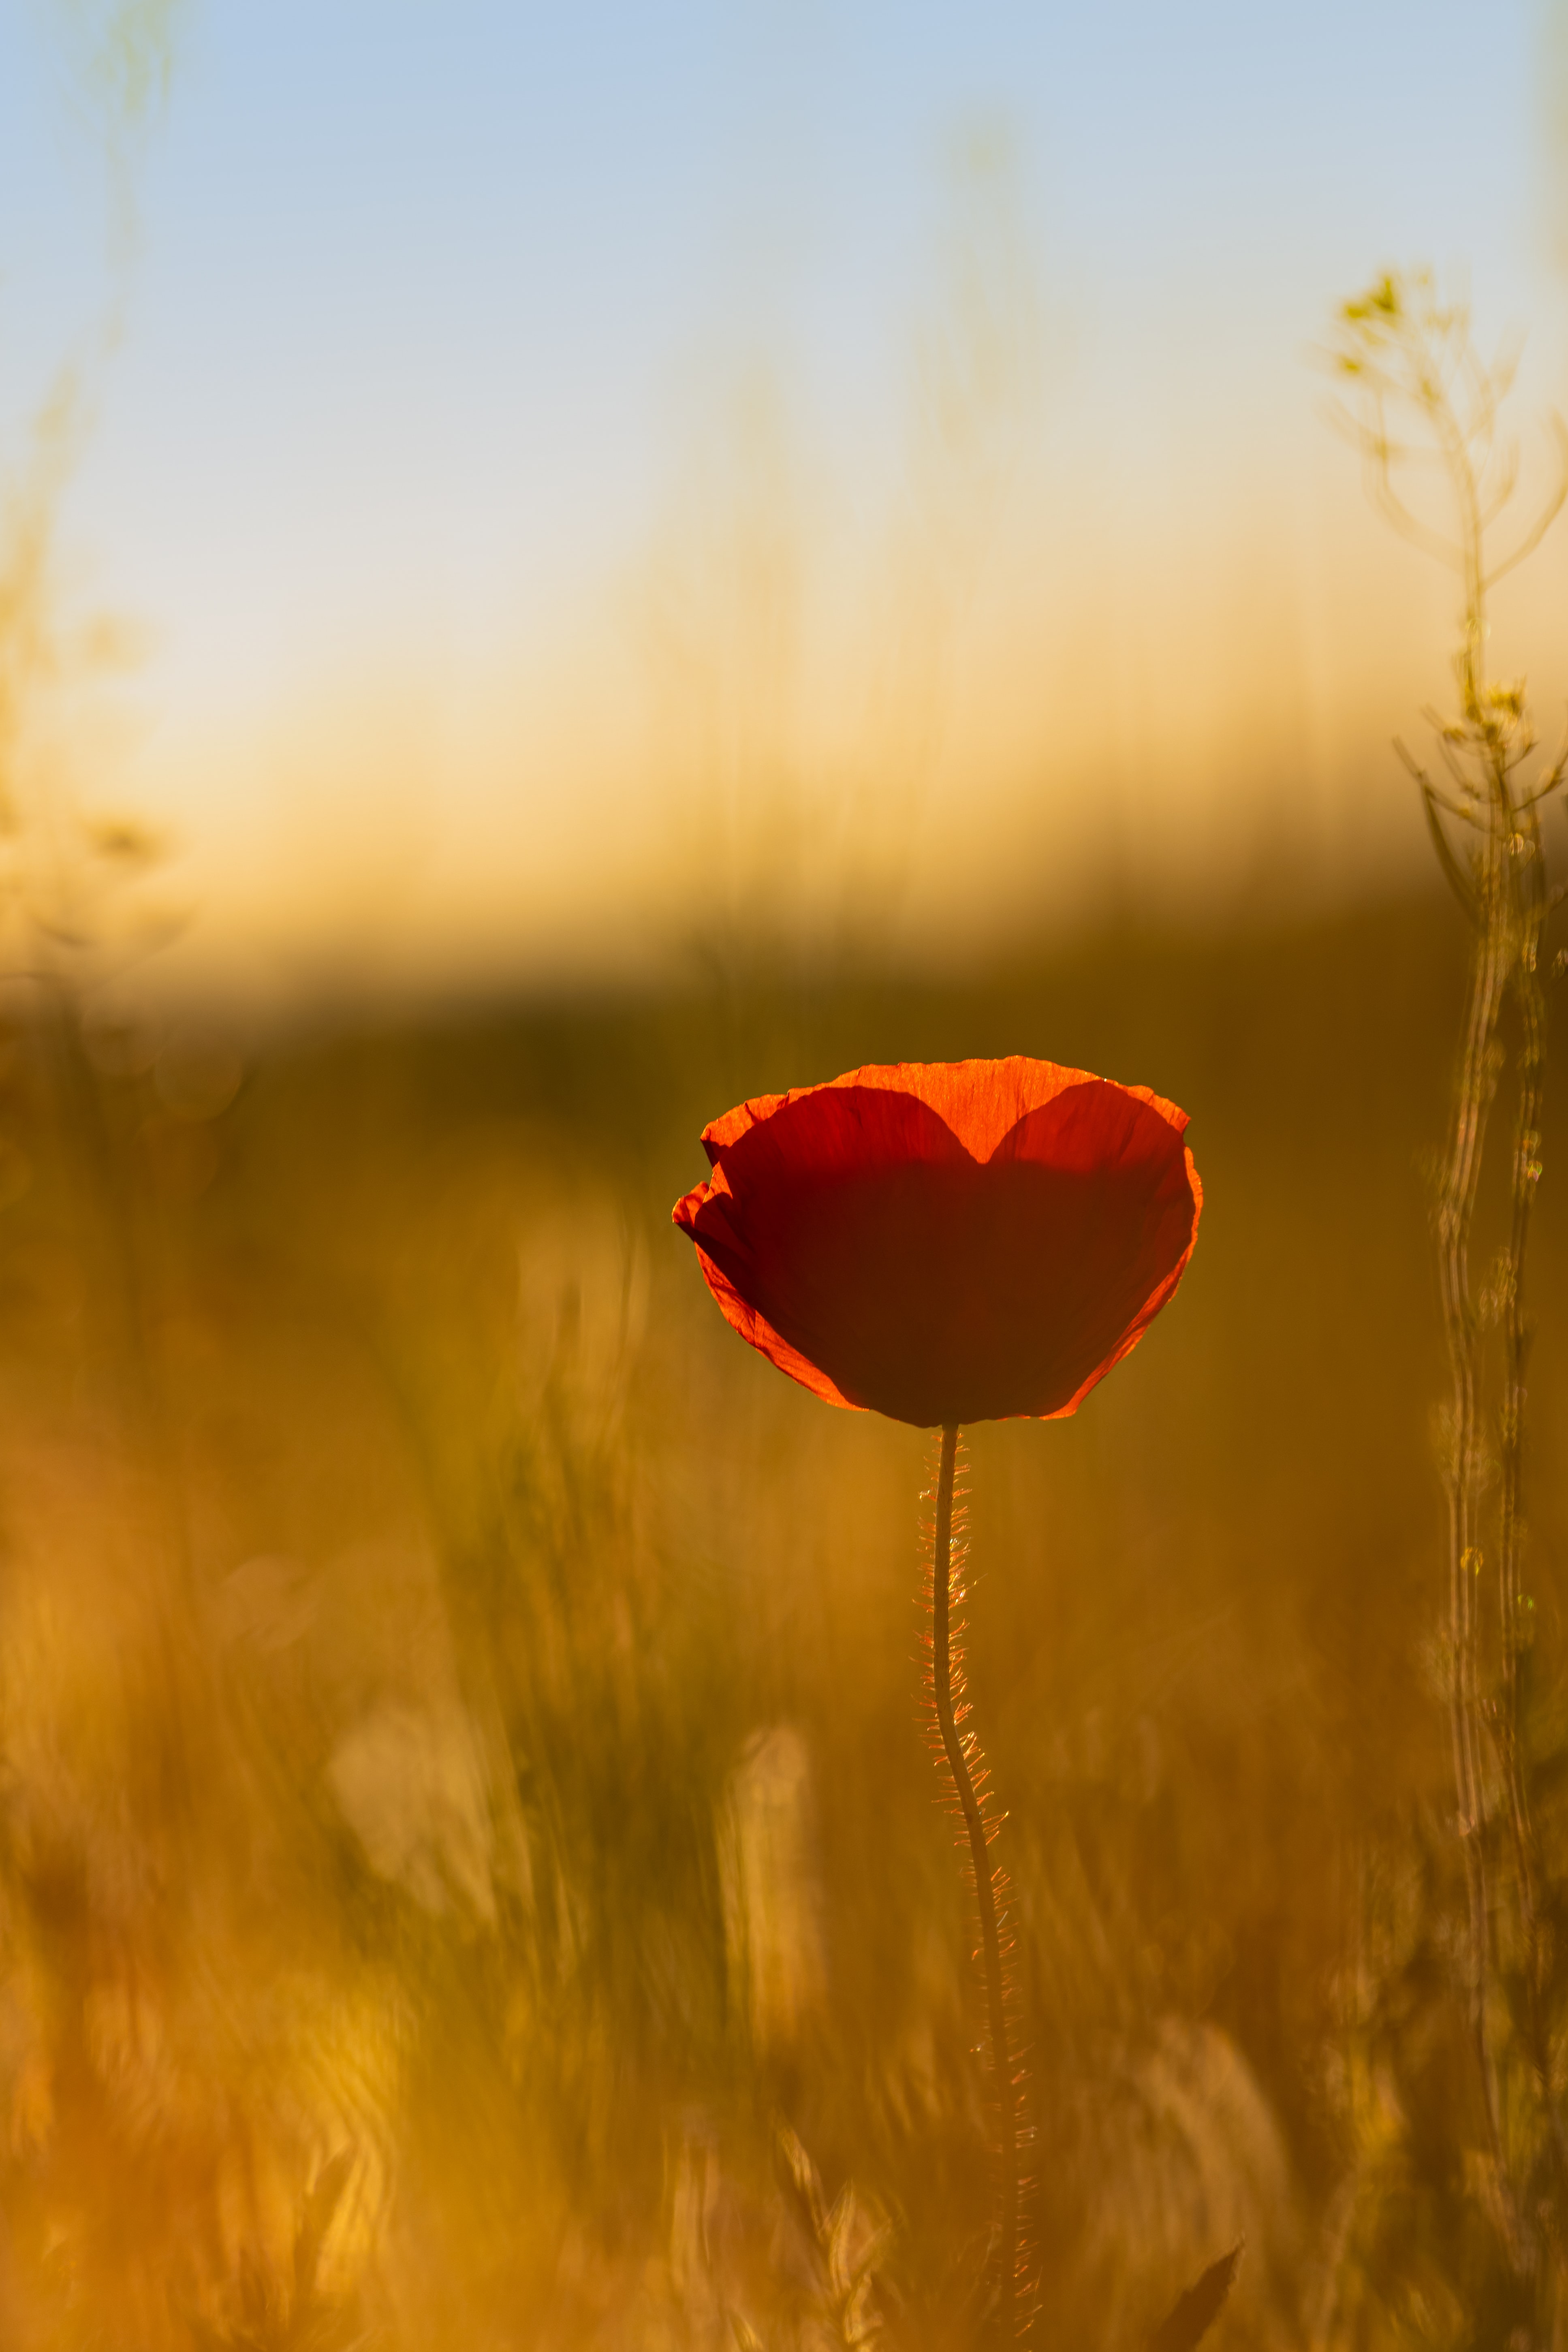 A heart shape is seen in a flower in a field.